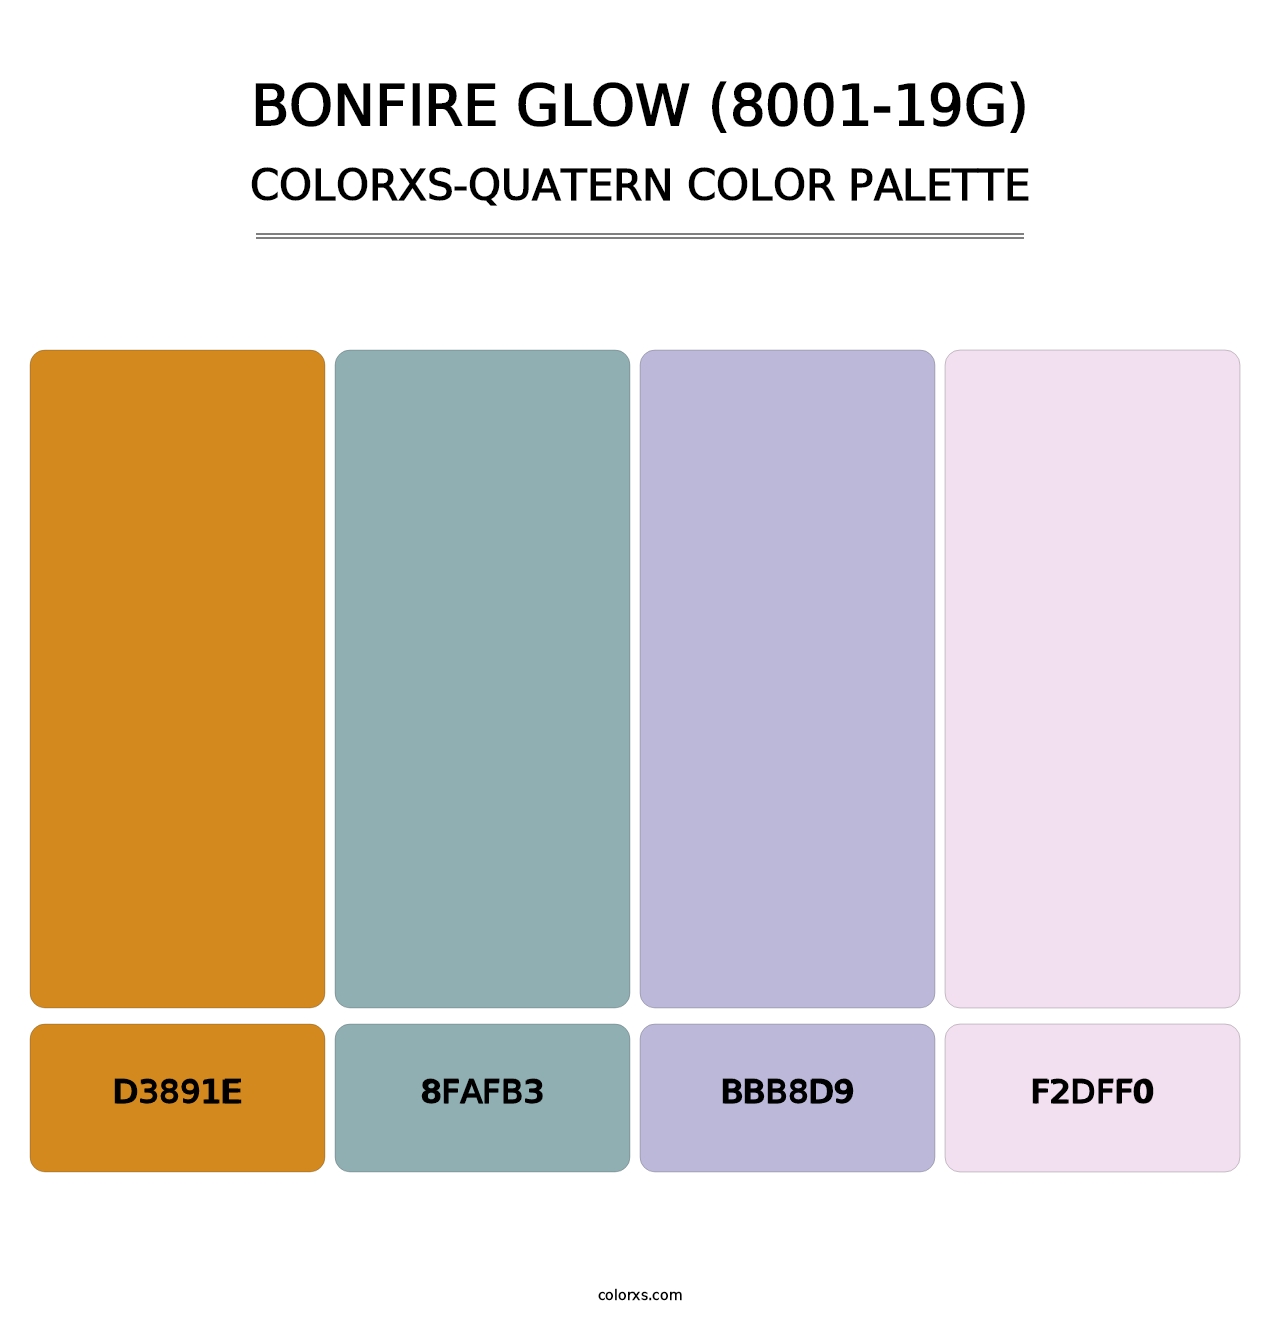 Bonfire Glow (8001-19G) - Colorxs Quatern Palette